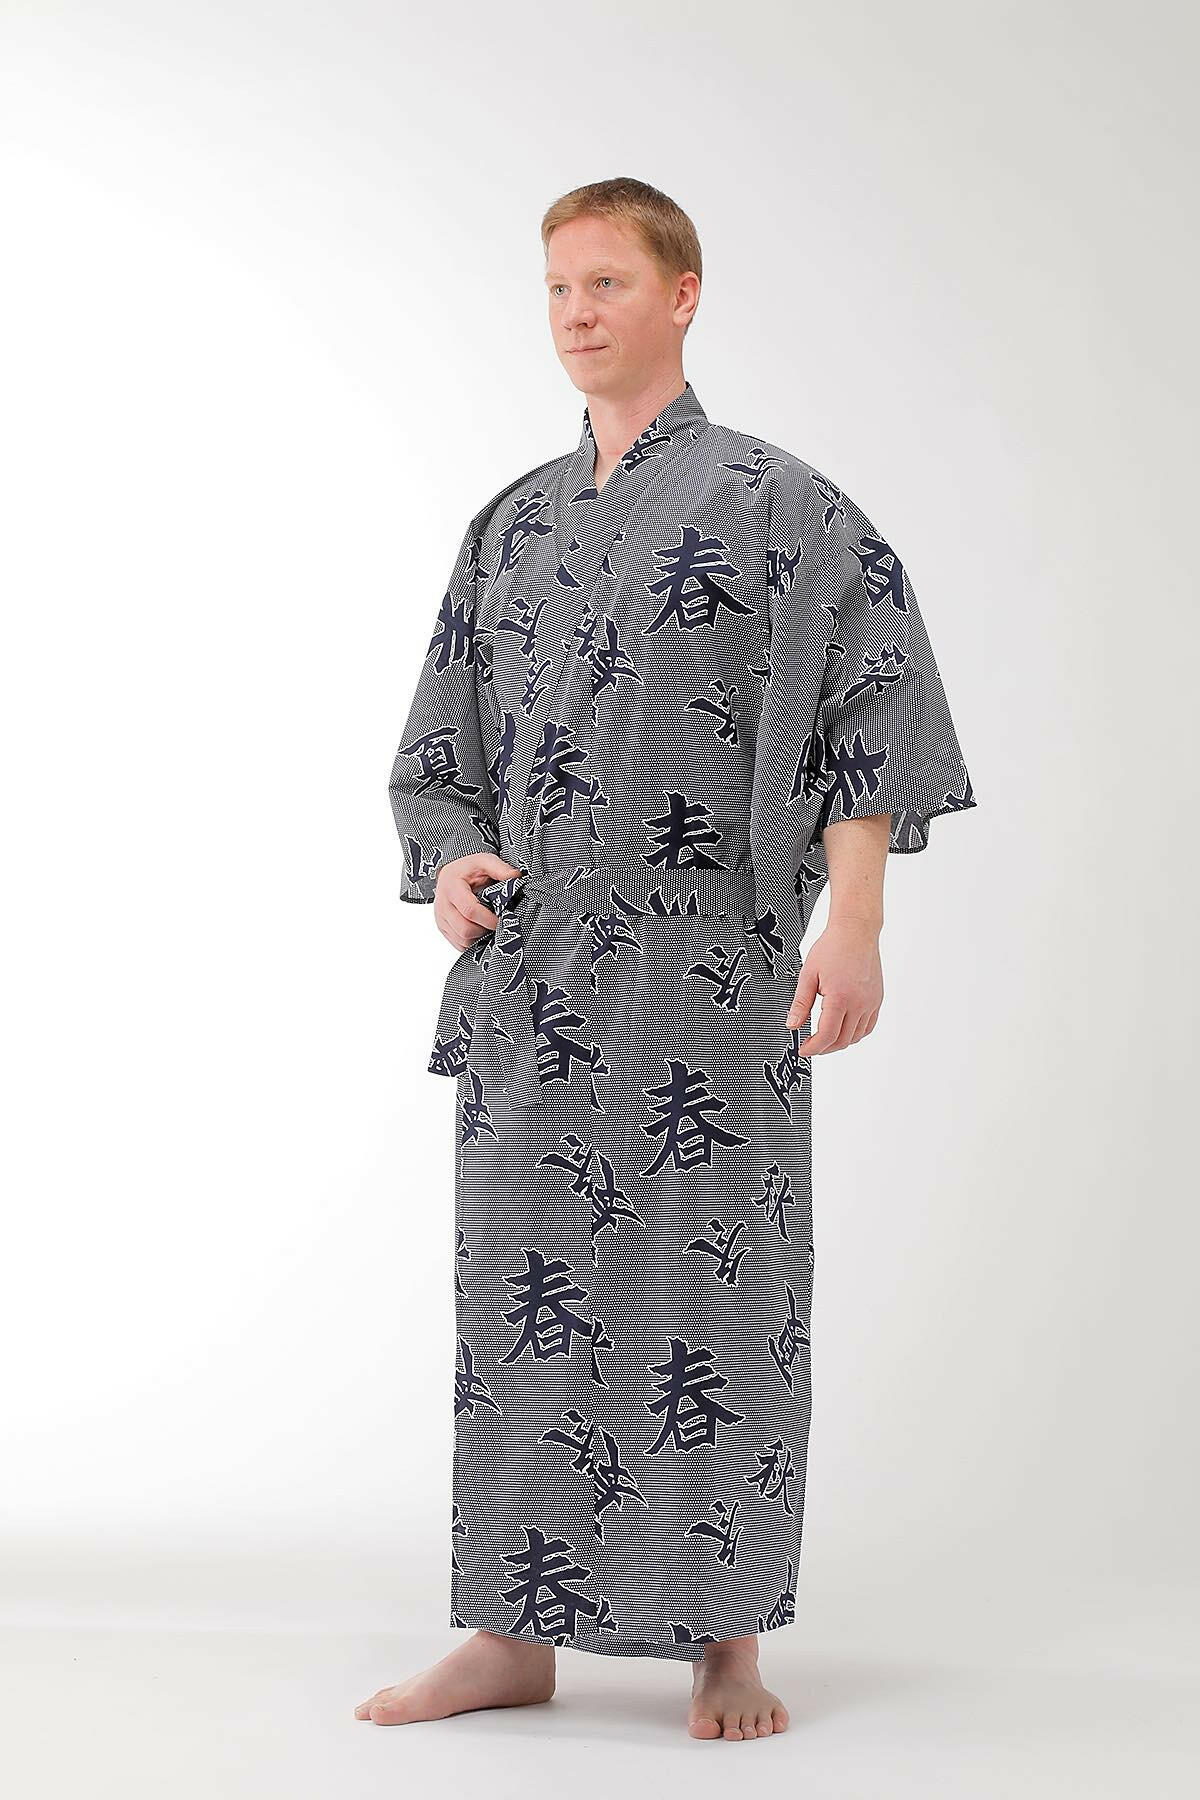 Men Four Seasons Cotton Yukata Kimono Model Front View